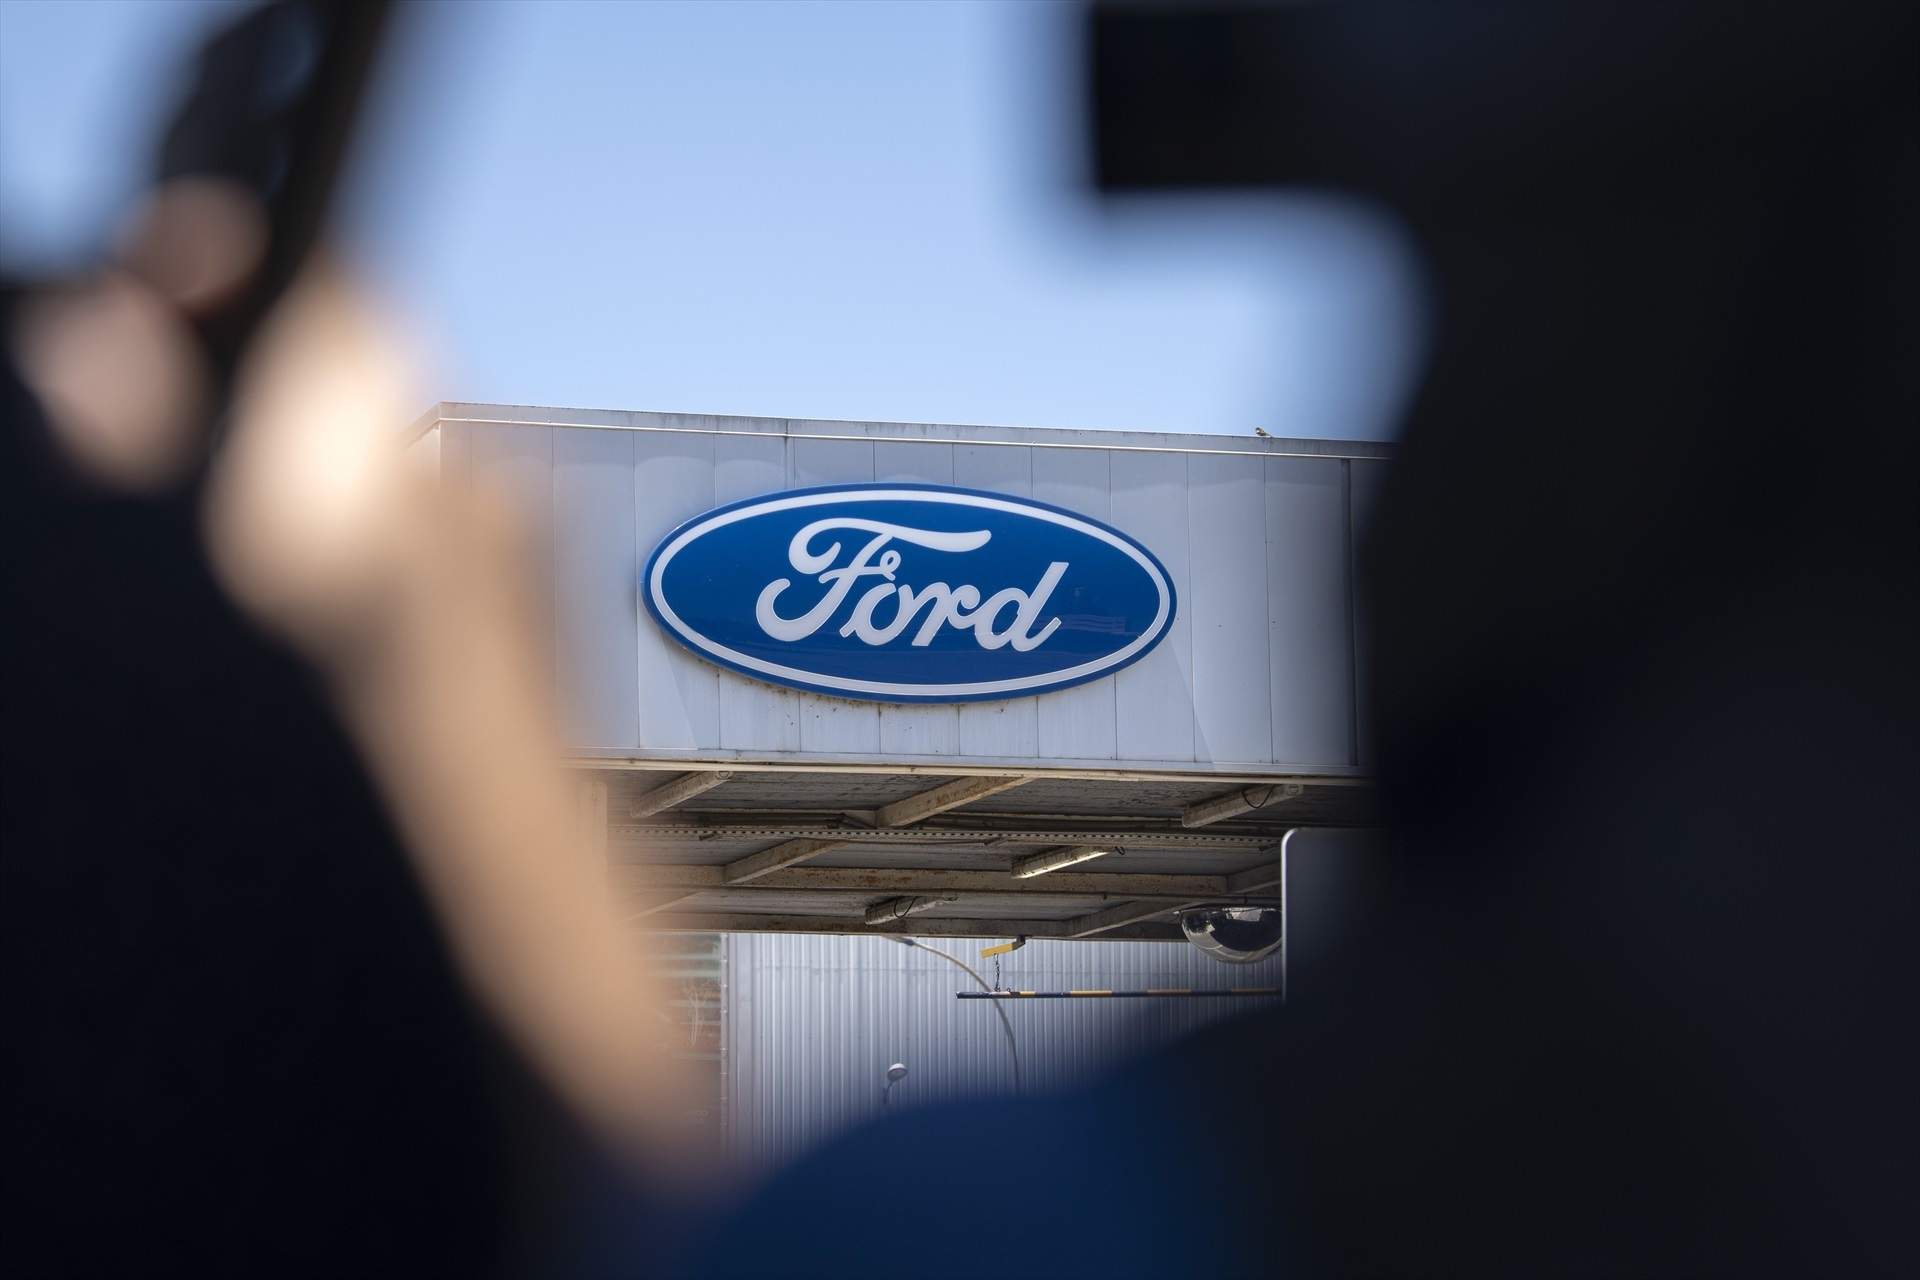 Ford, abierta a negociar alternativas a los mil despidos, que serían recolocados